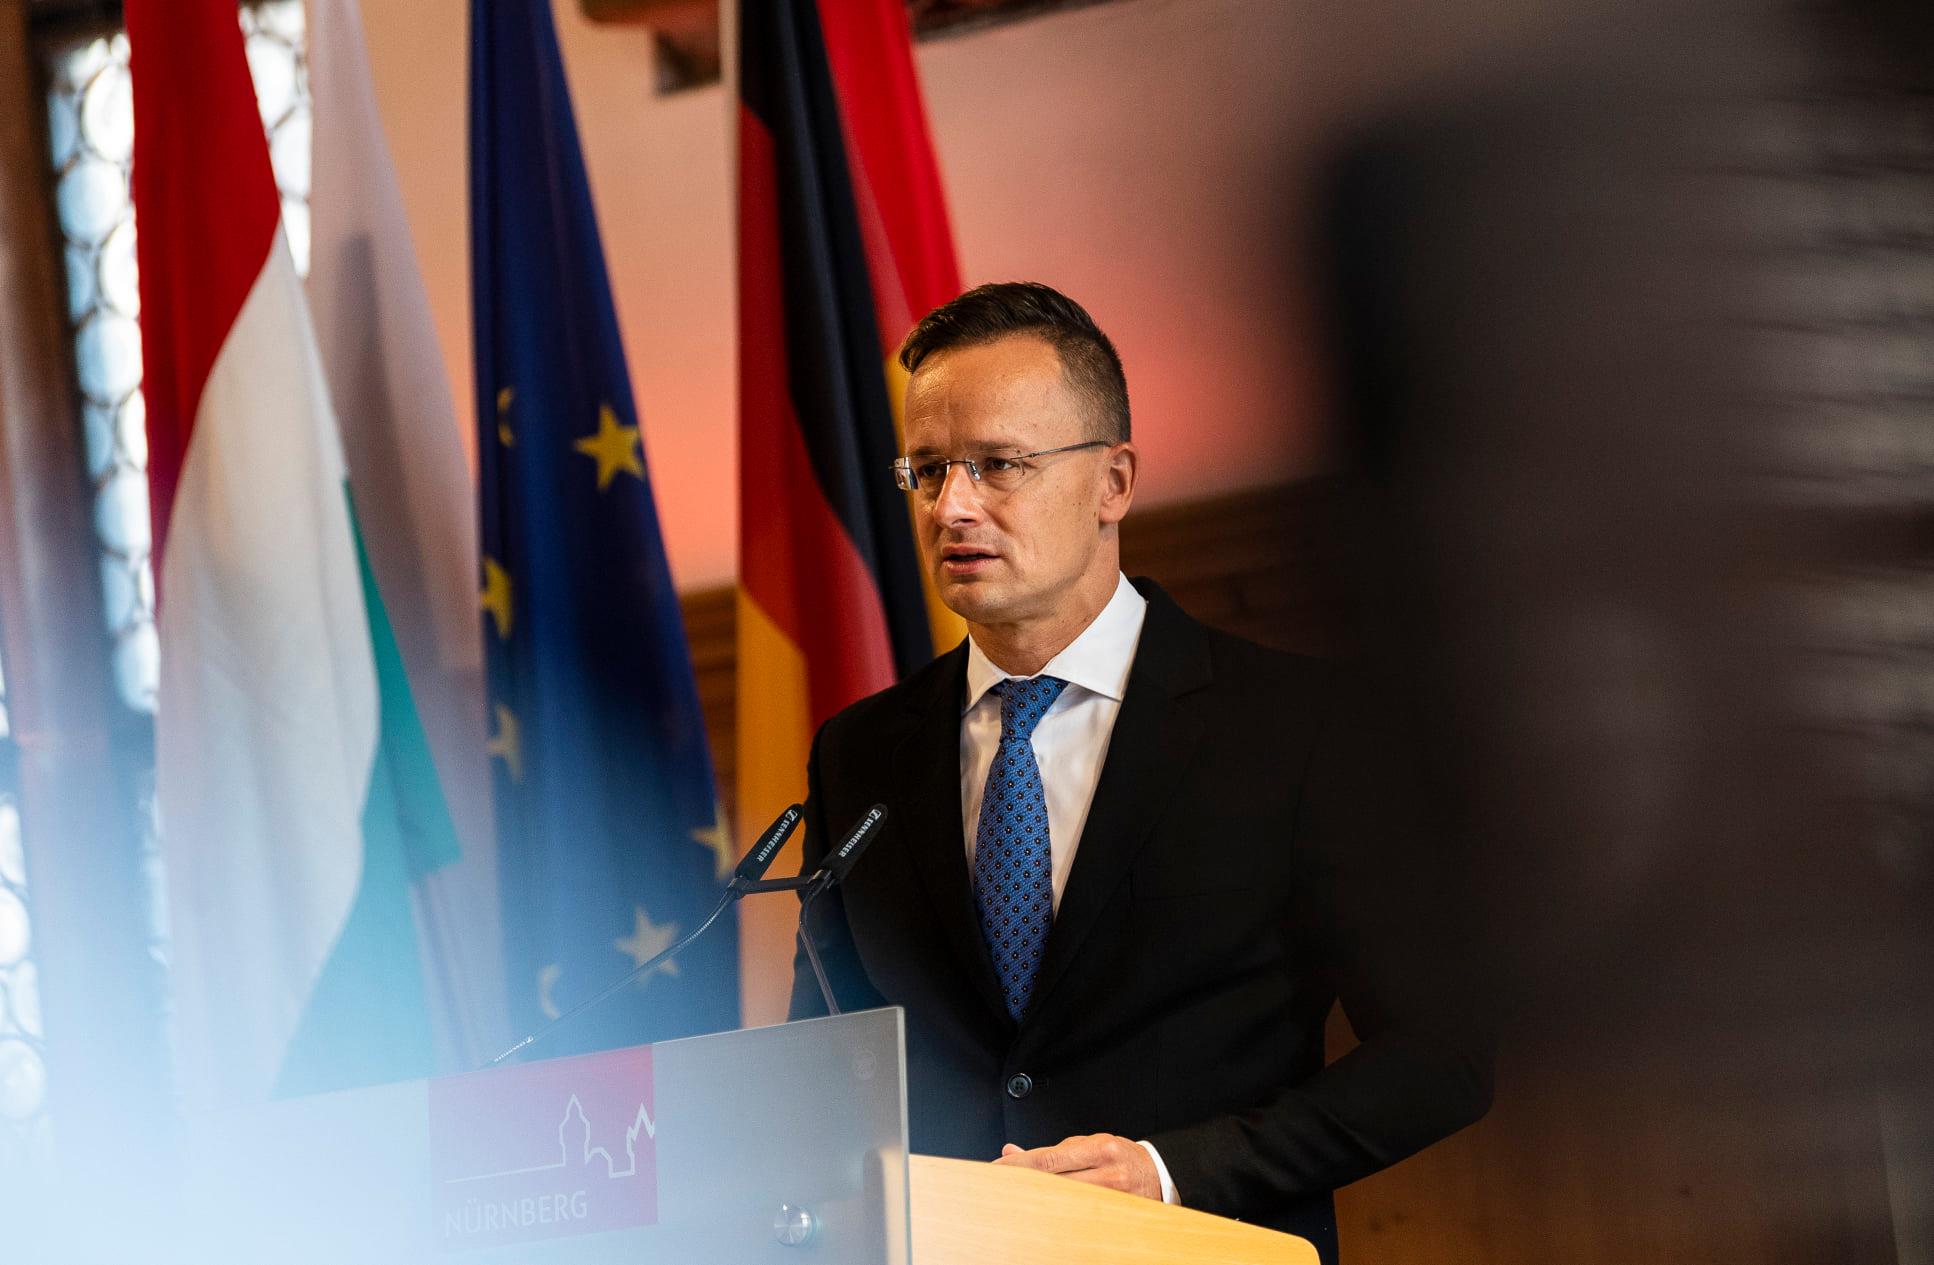 Ungaria diplomatie Germania